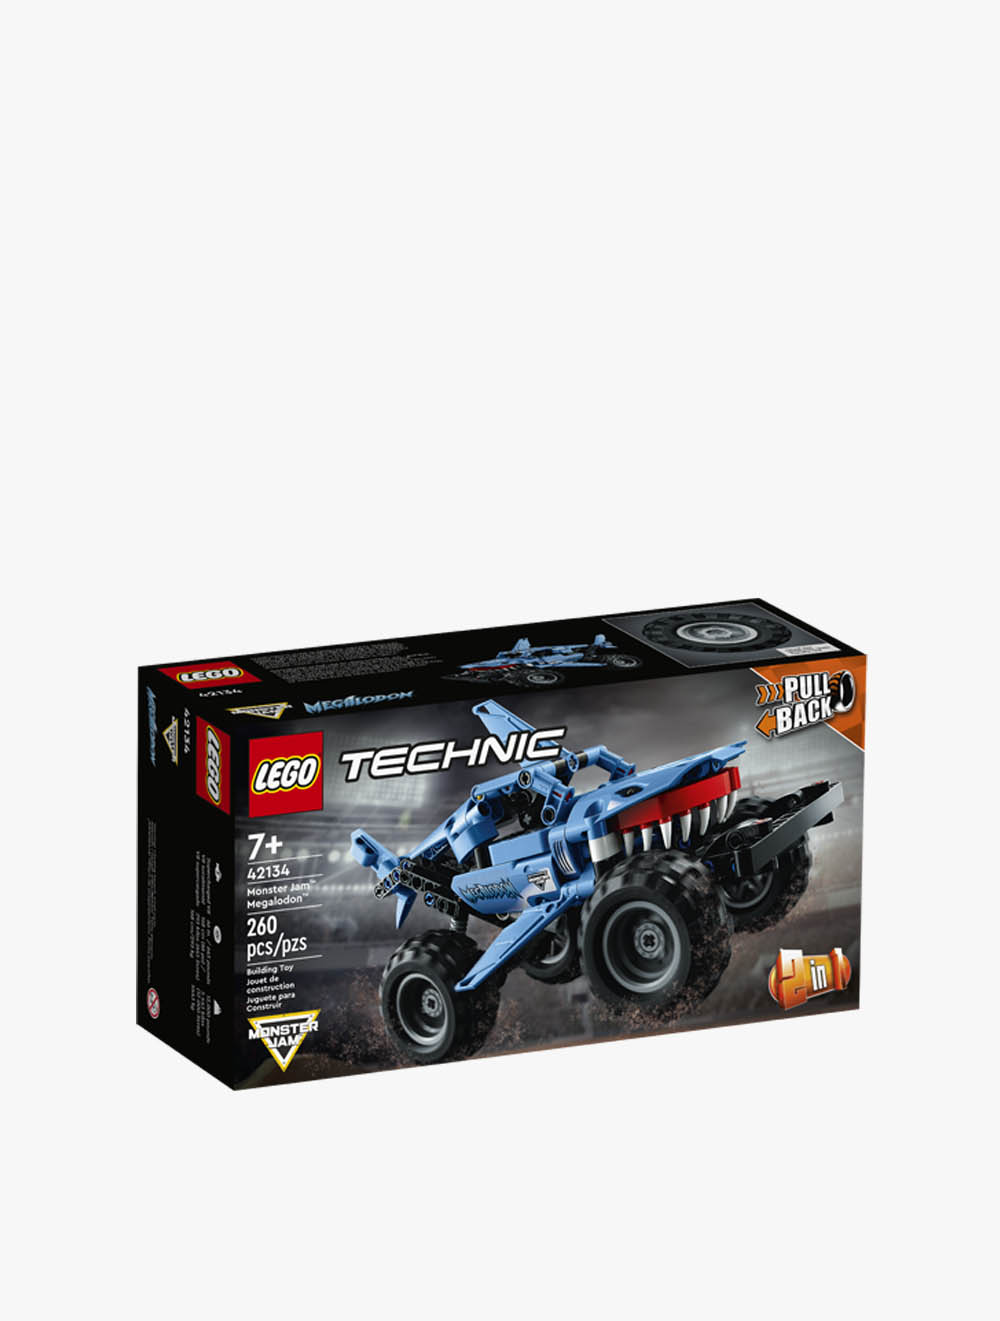 42134 LEGO® Technic Monster Jam™ Megalodon™ Building Toy, 260 pc